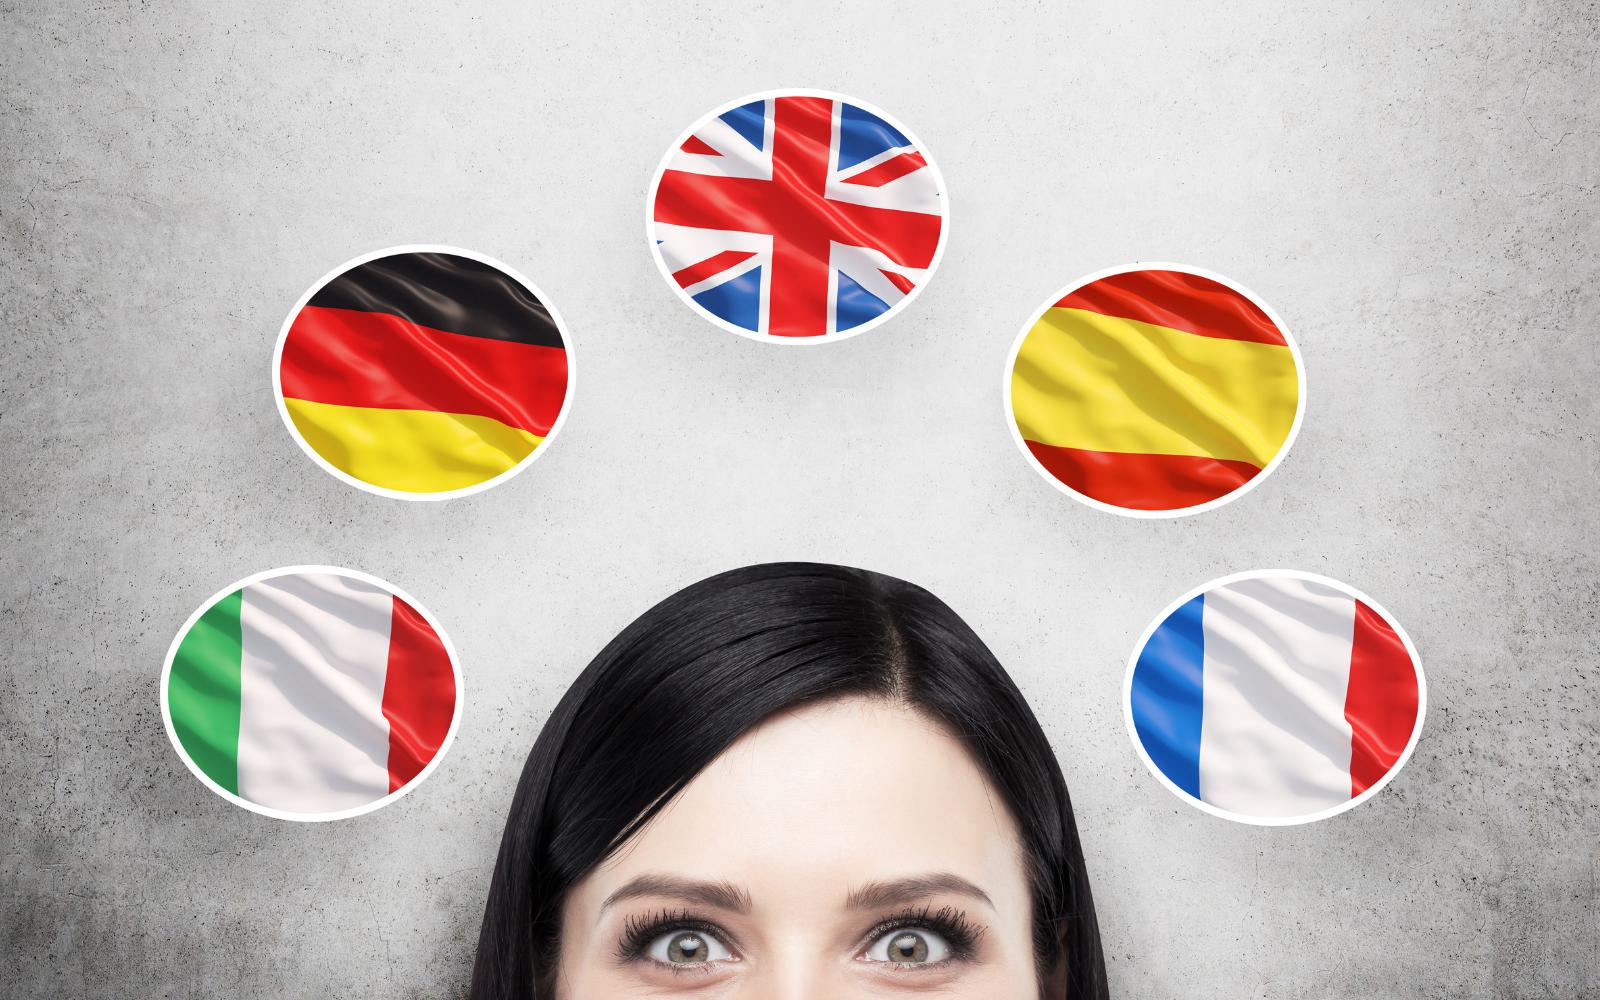 Тест: К изучению какого языка вы больше всего склонны?